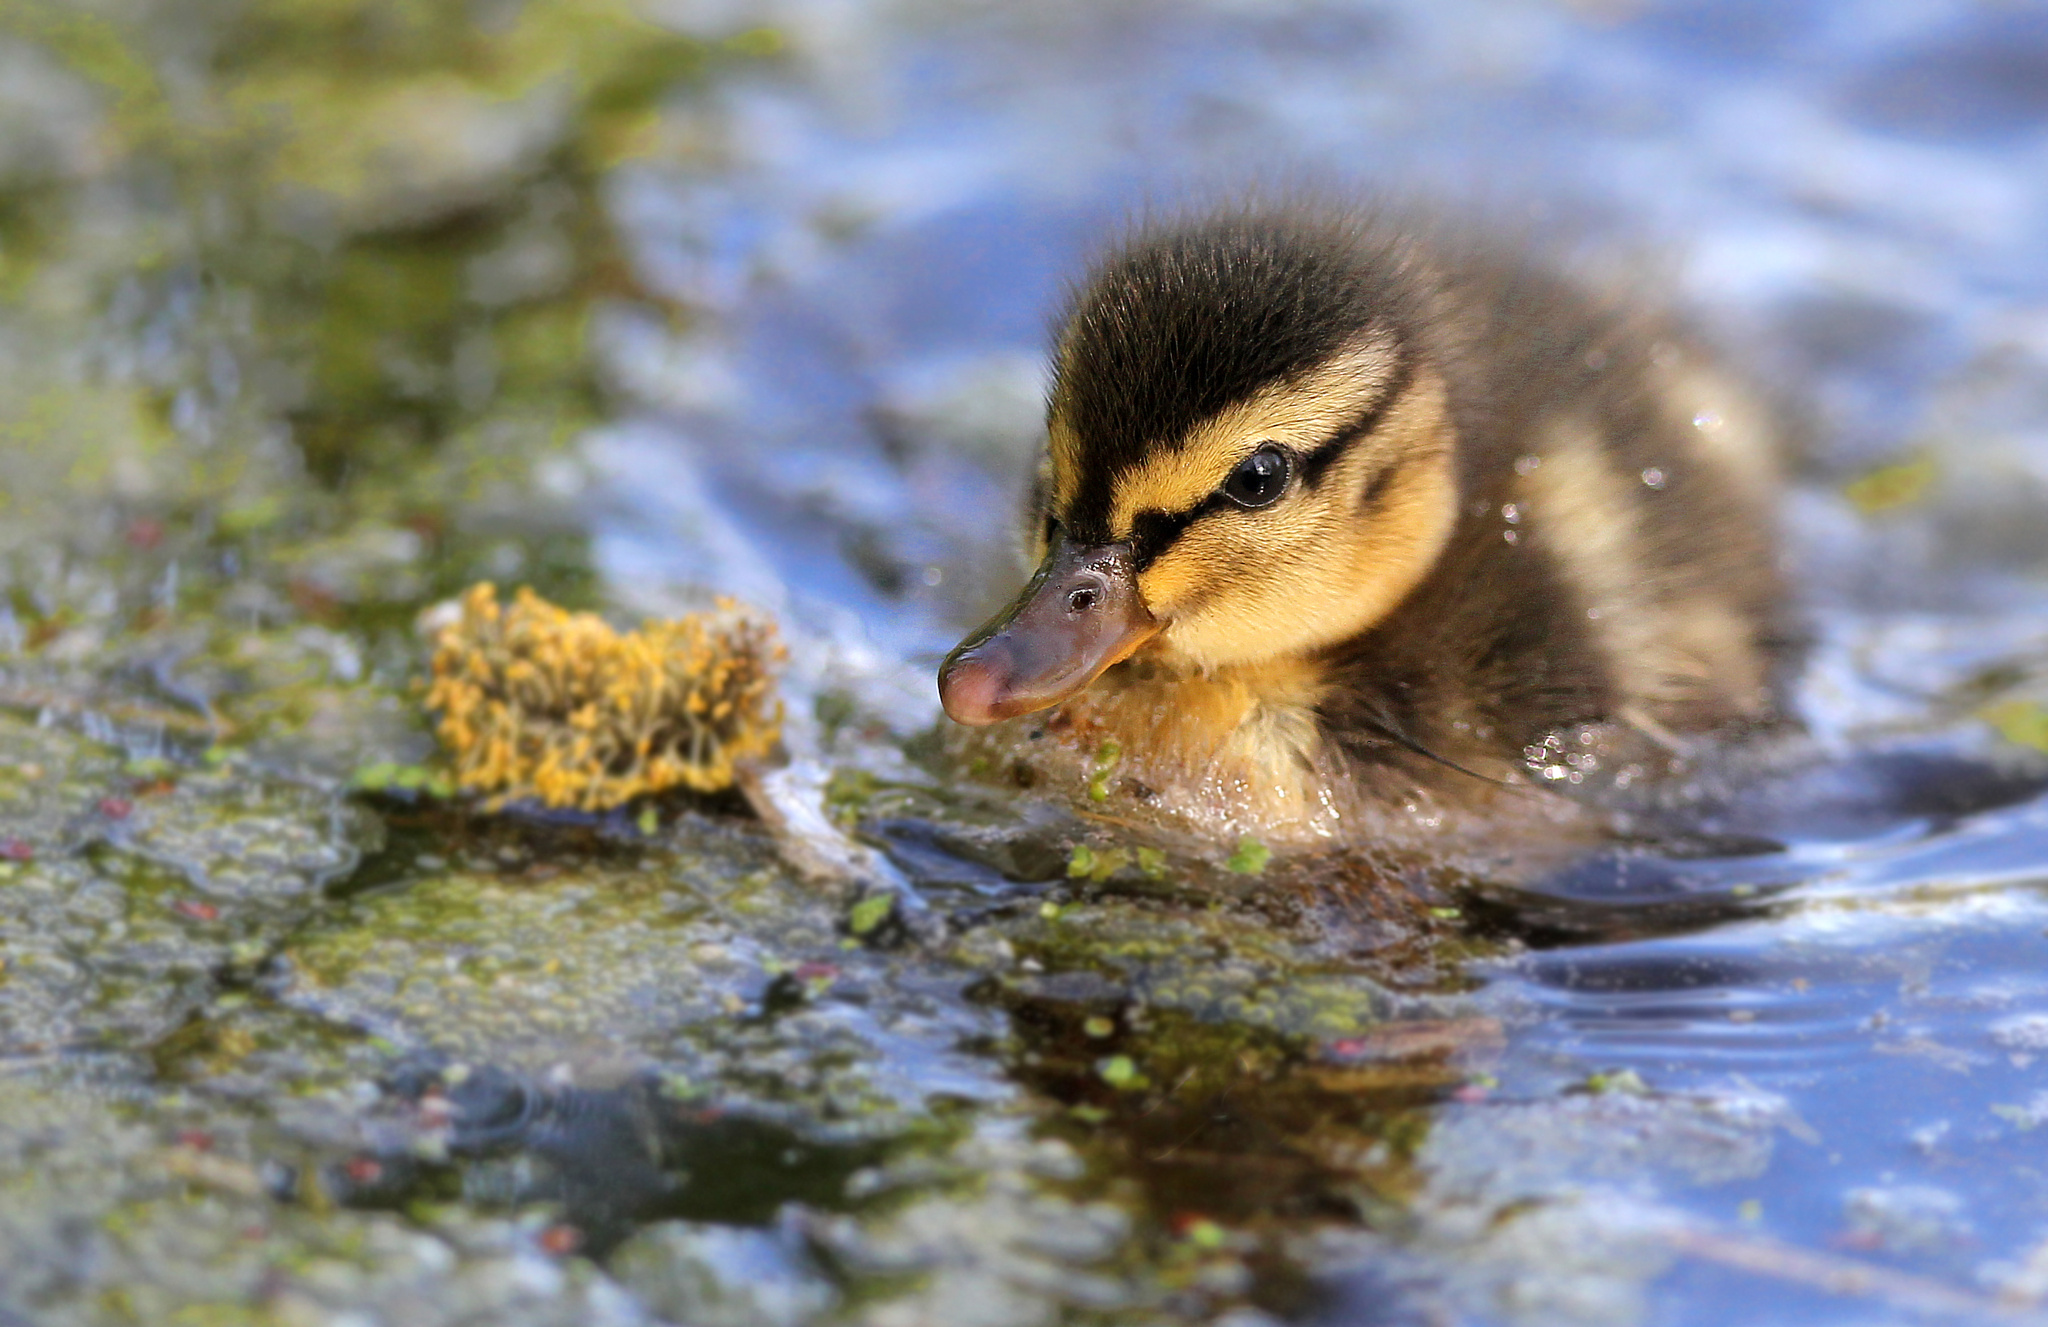 Baby duck by Tobias de Haan